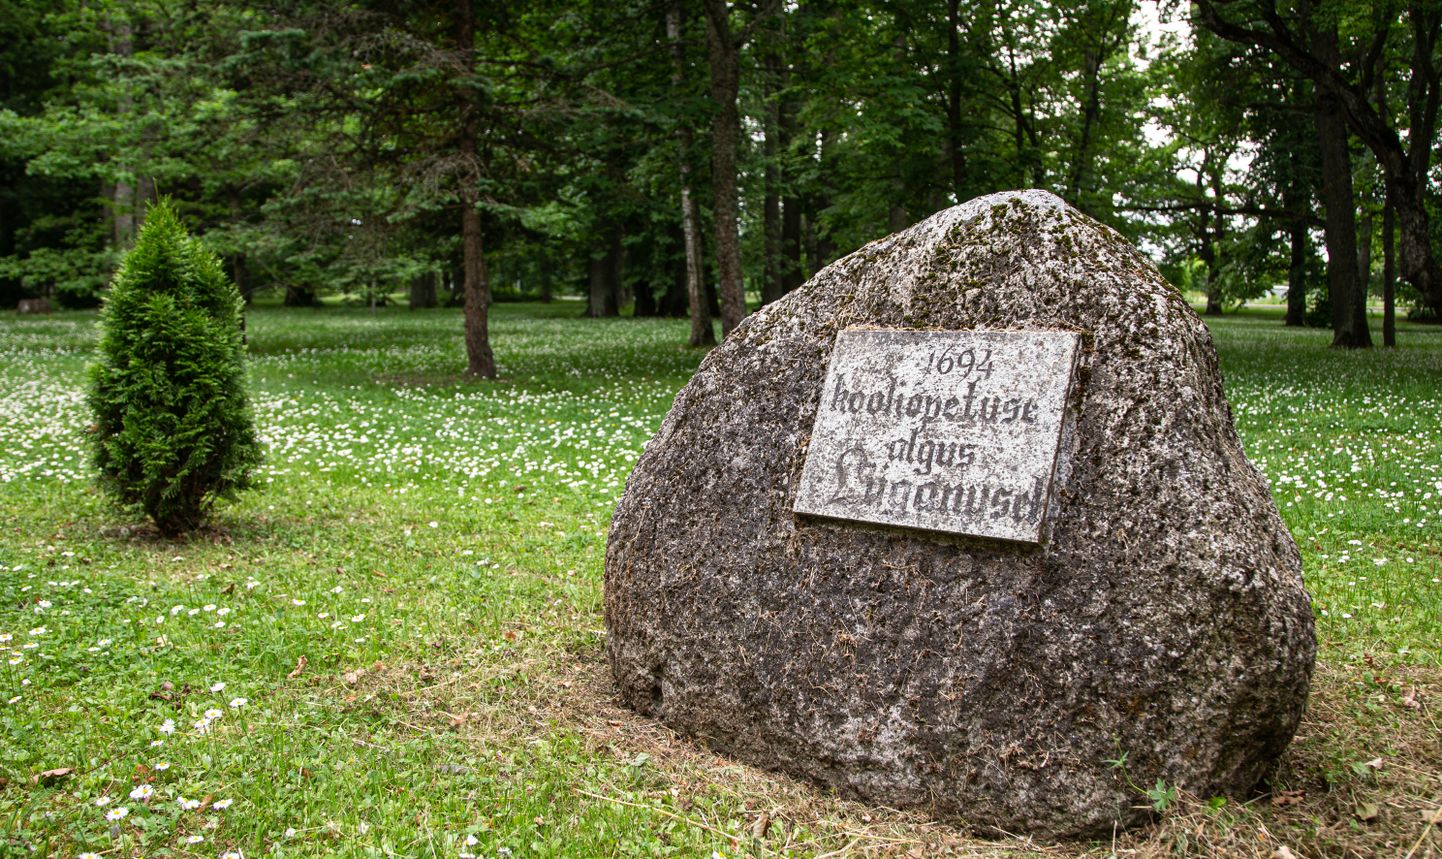 Расположенный в школьном парке памятный камень сообщает, что школьное образование давали в Люганузе еще с конца 17-го века. Волость планировала прервать эту преемственность, однако государство готово взять школу под свое крыло.